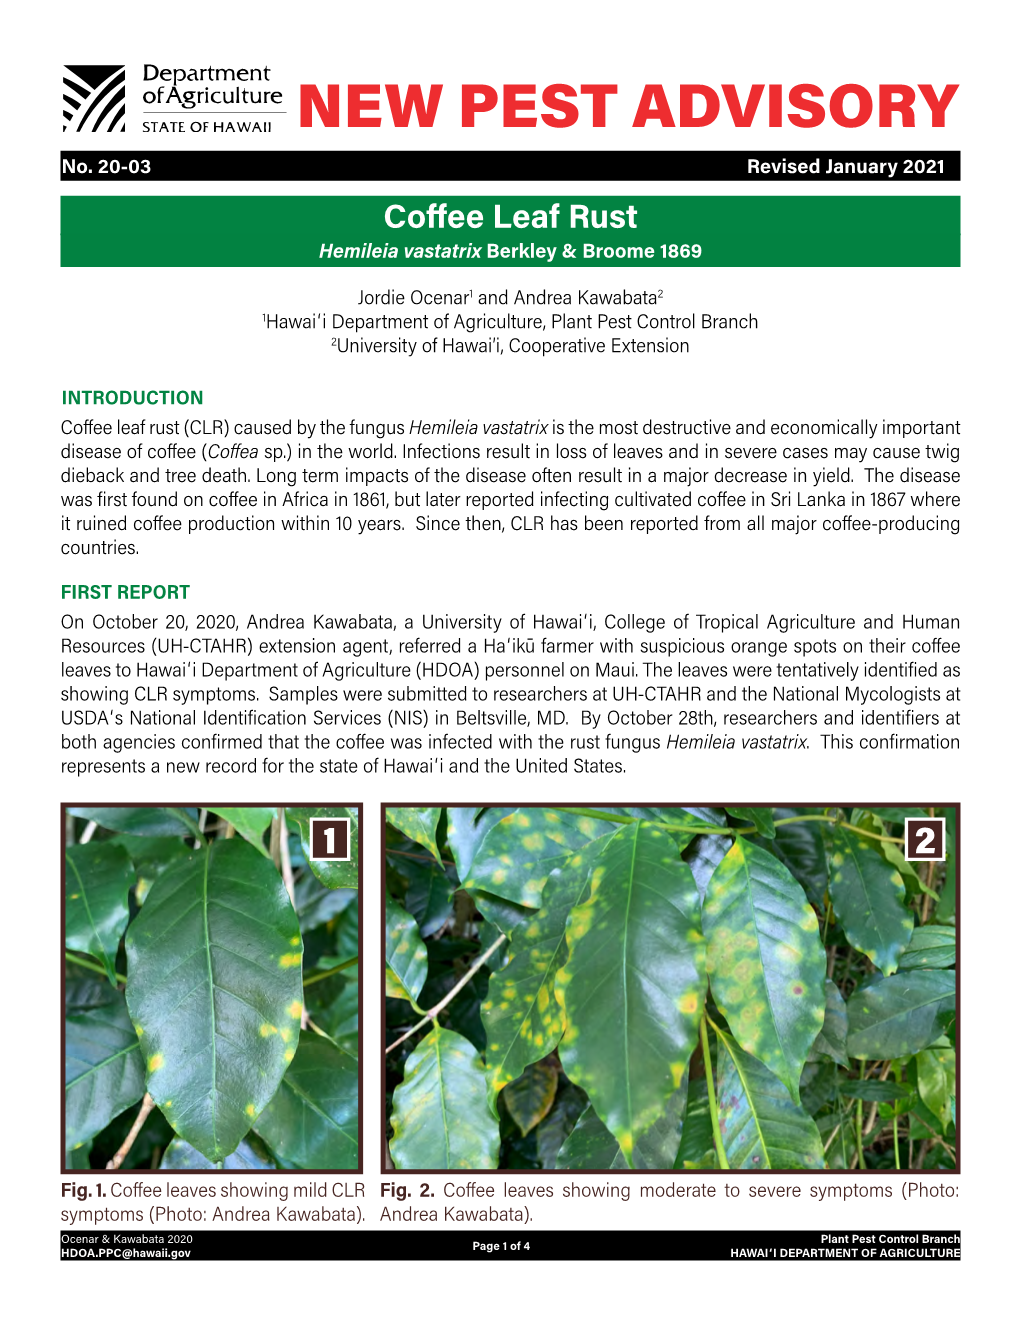 Coffee Leaf Rust Advisory